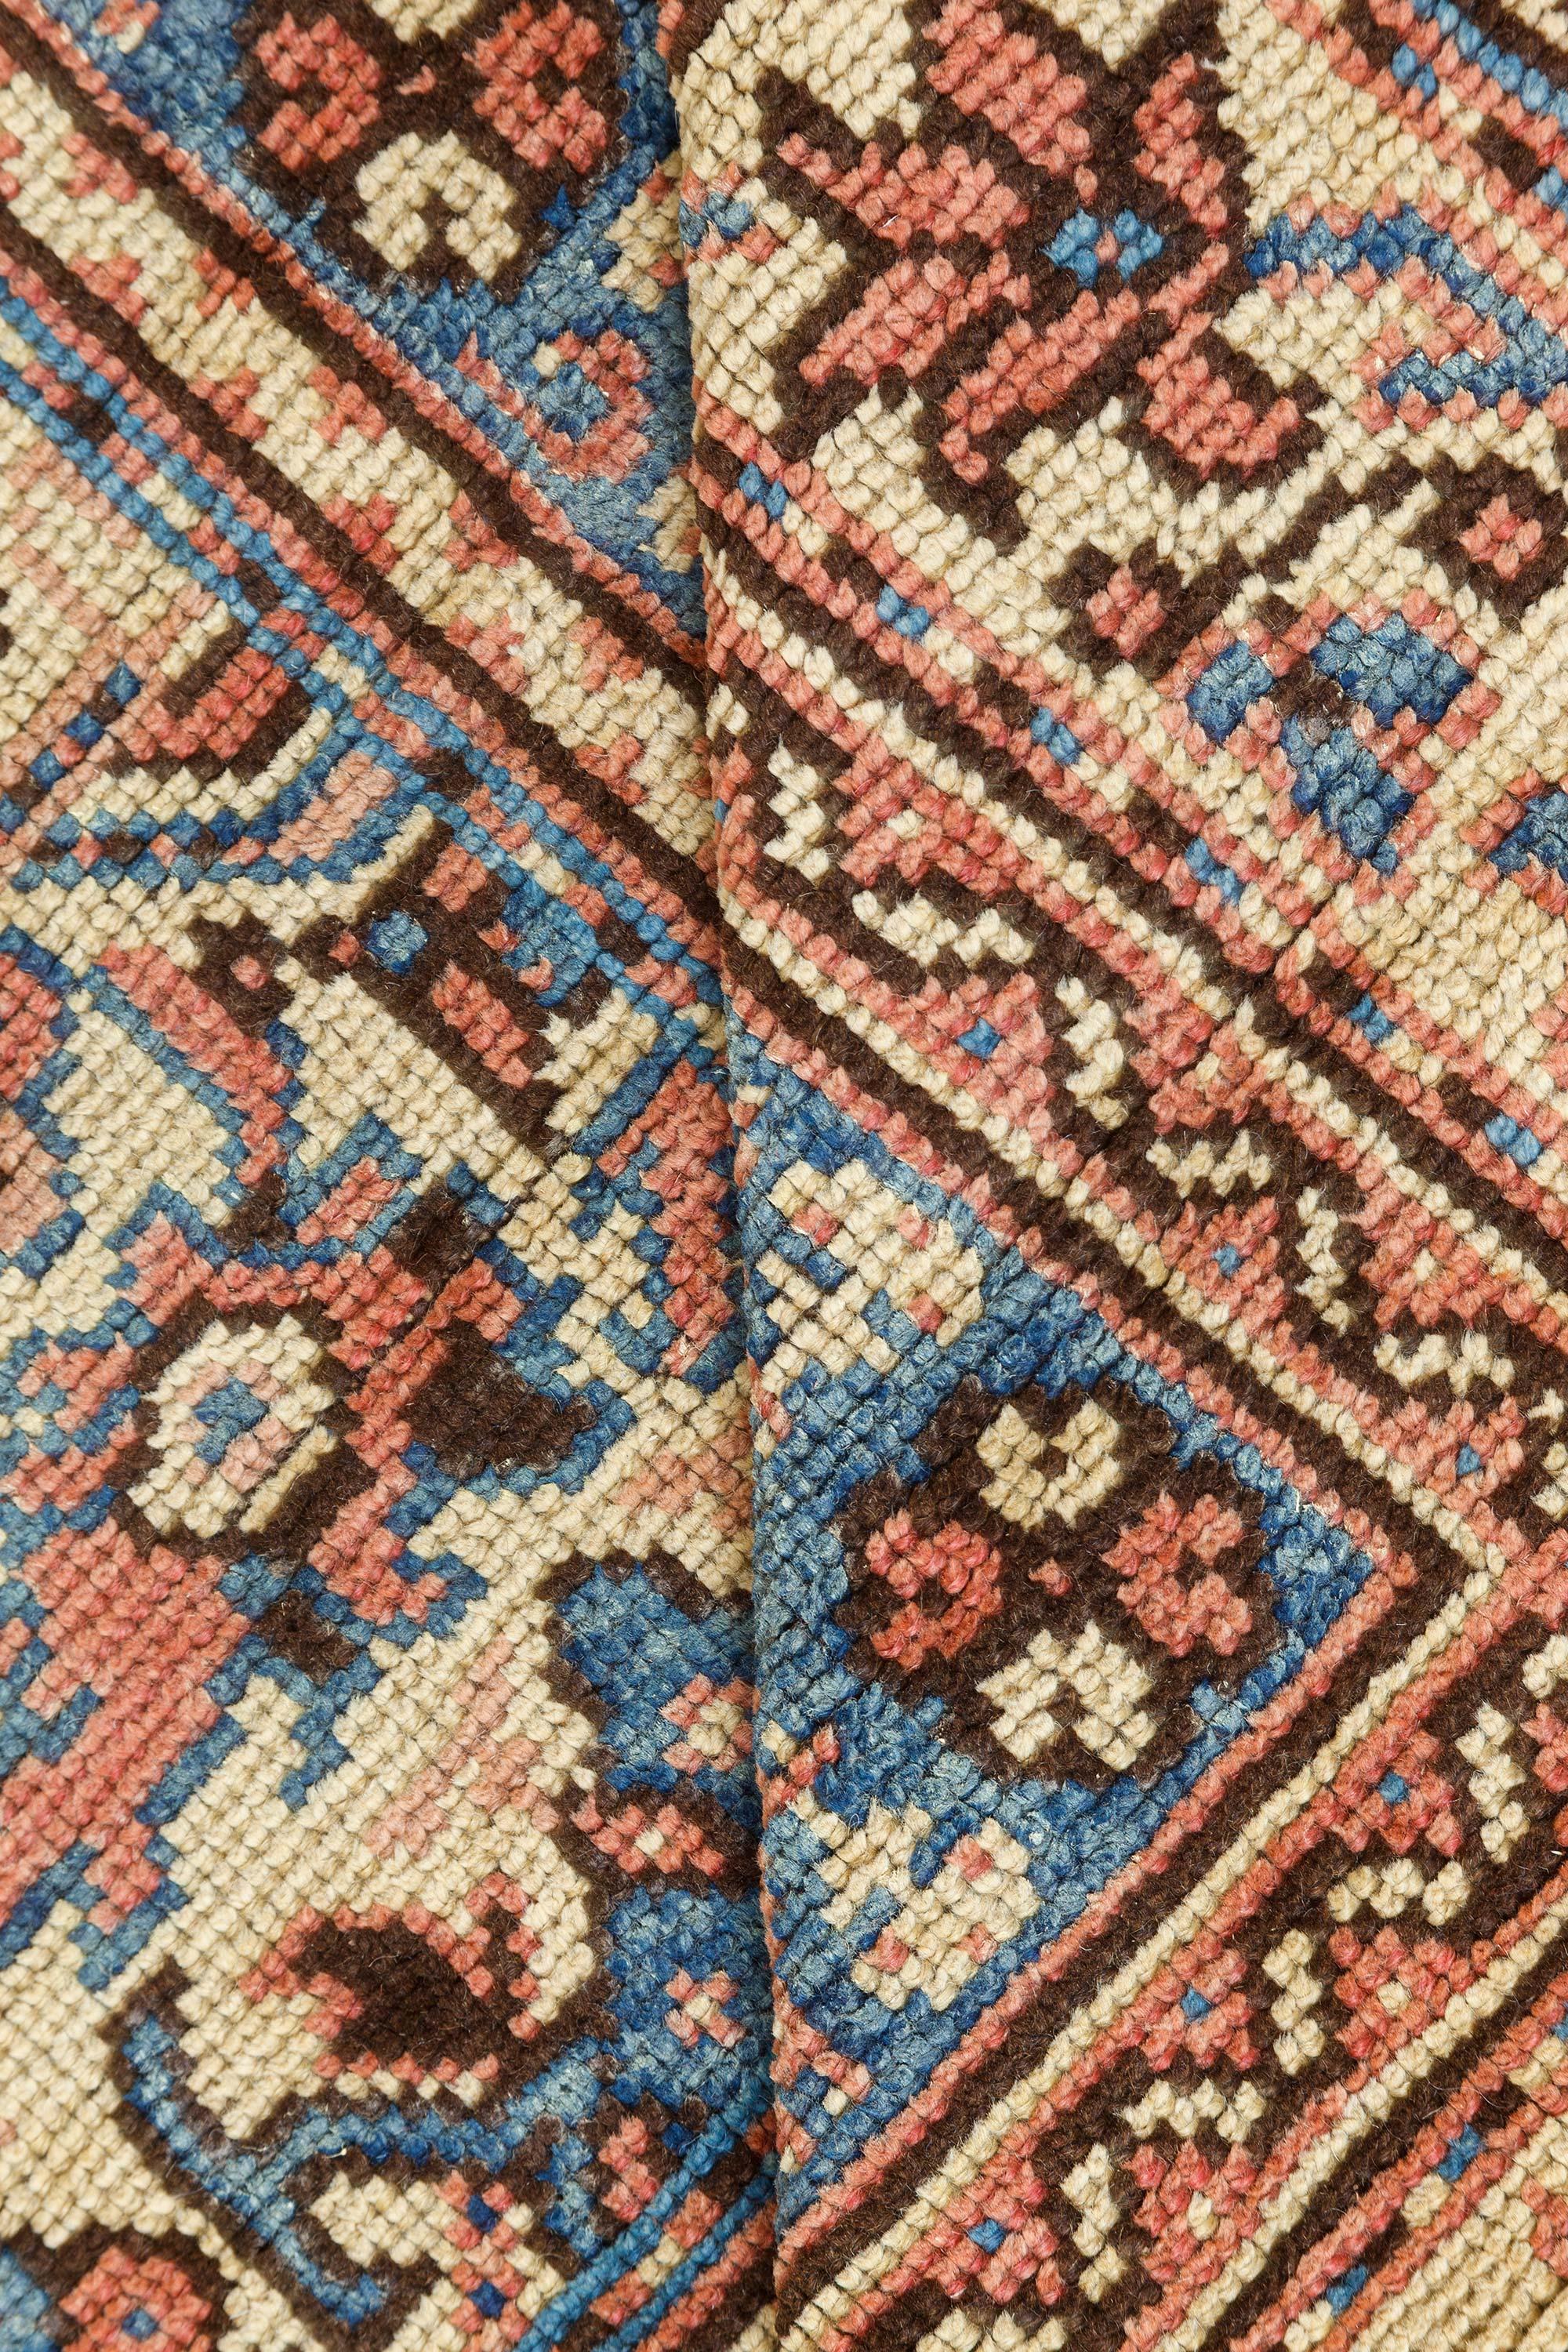 Authentic 1900s Turkish Oushak Botanic Blue, Beige, Pink Handmade Wool Carpet
Size: 13'10